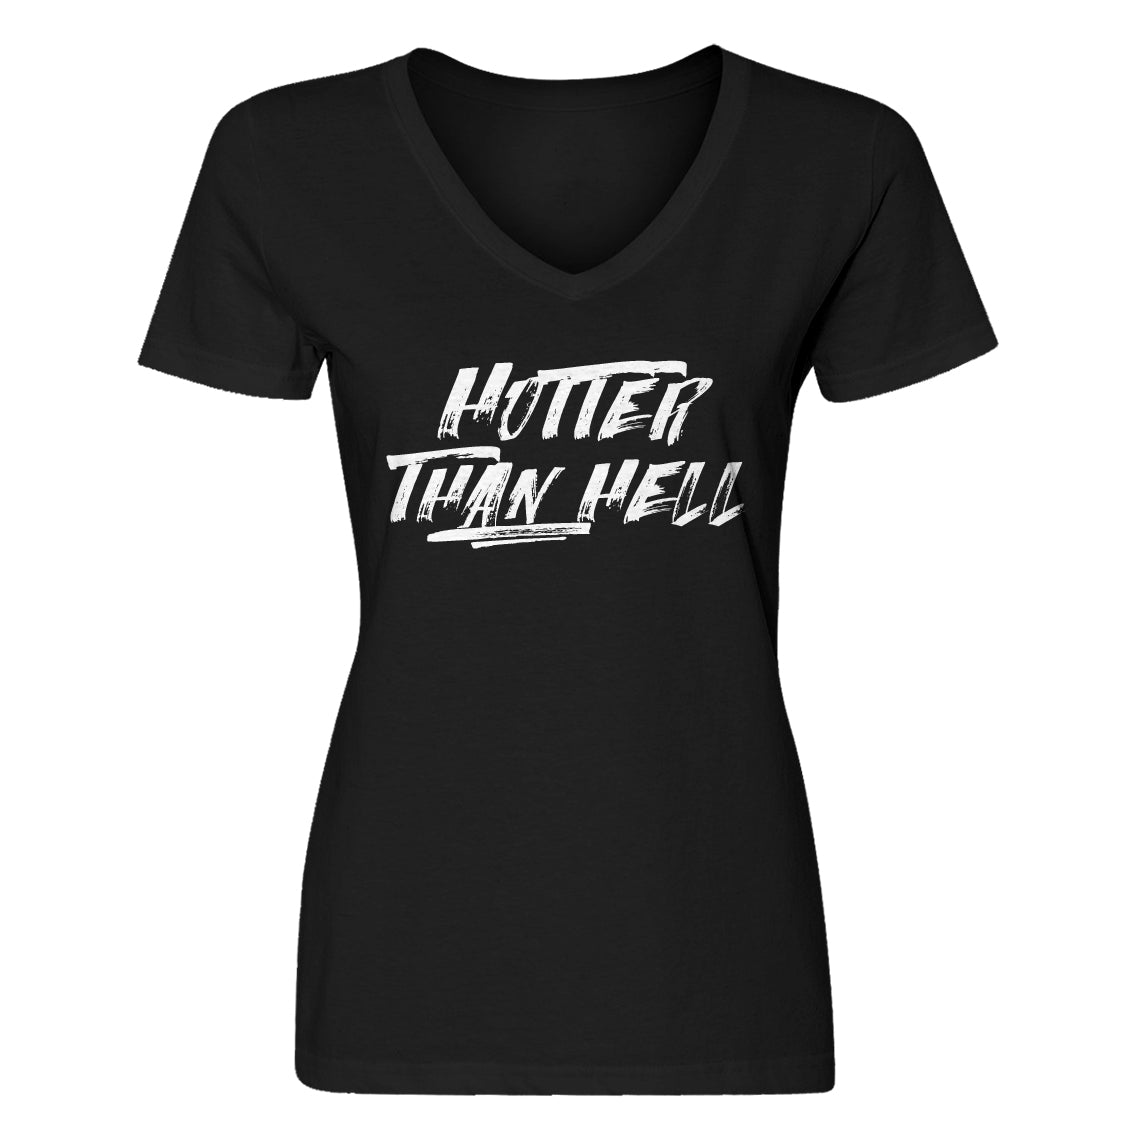 Womens Hotter than Hell Vneck T-shirt